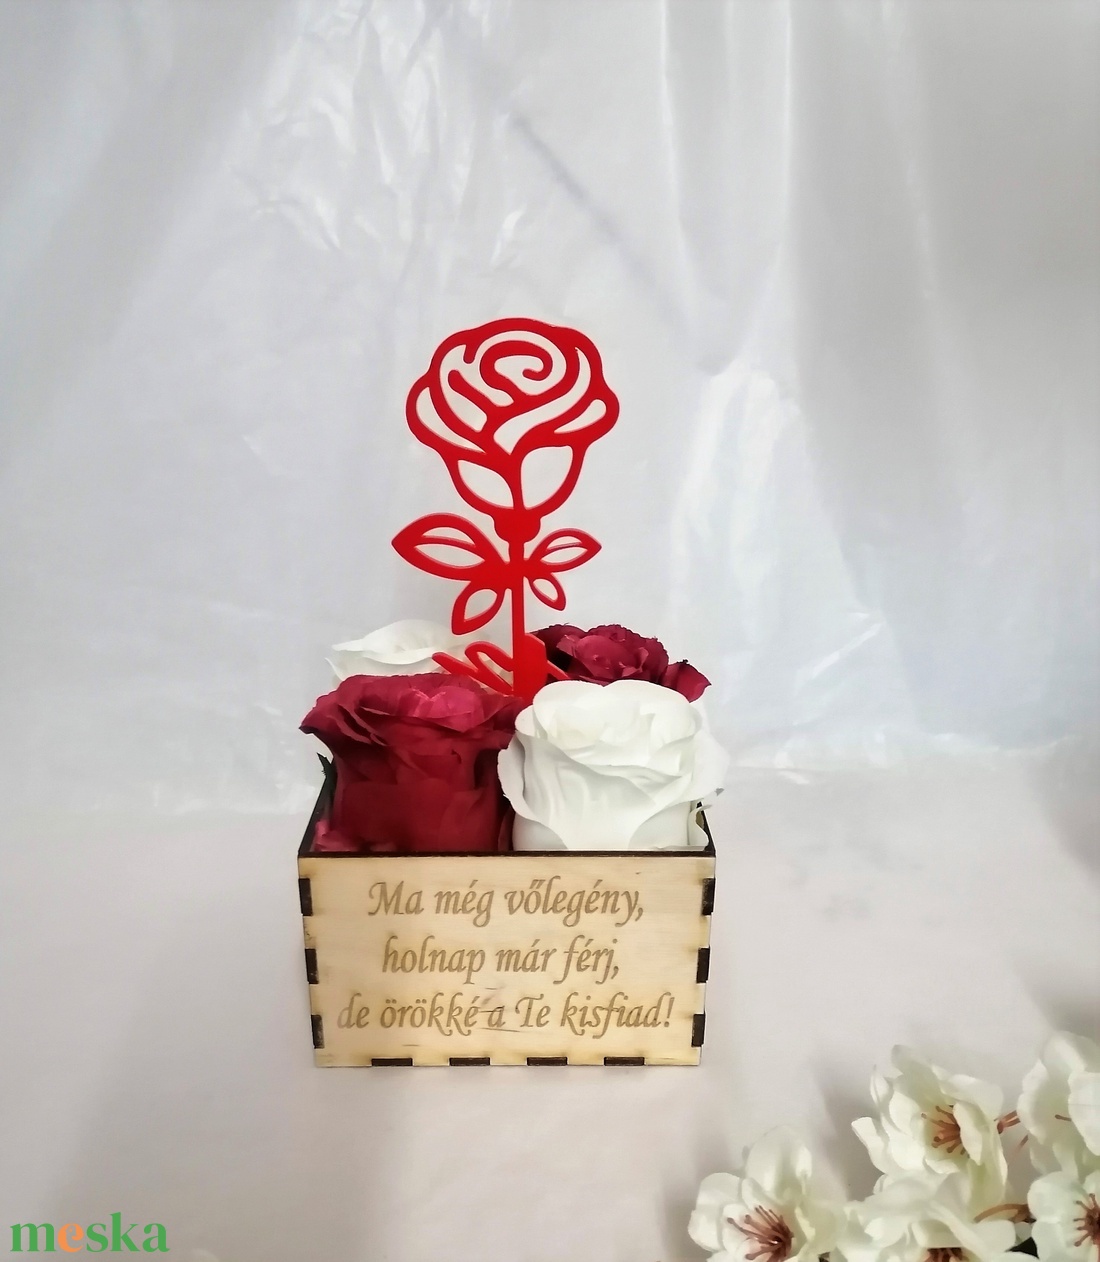 Virágbox 4 nagyfejű selyemrózsa és plexi rózsa  Édesanyáknak, Nagymamáknak, testvérnek és minden kedves nő szeretteidnek - esküvő - emlék & ajándék - szülőköszöntő ajándék - Meska.hu